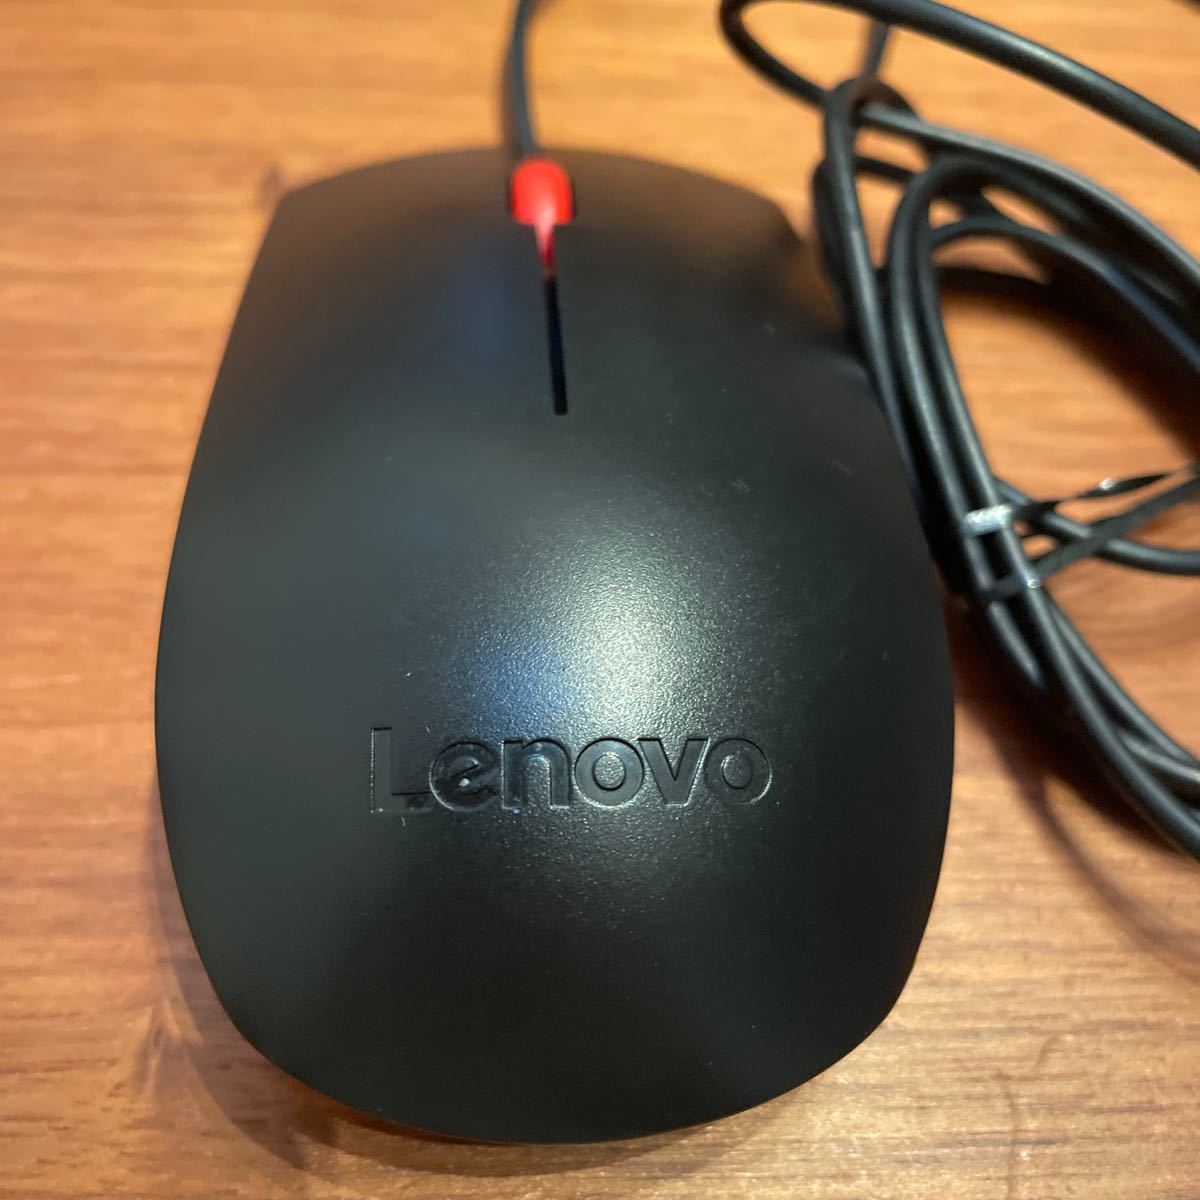 Lenovo レノボ USB 光学式 マウス 純正 00PH133 有線マウス 光学 Optical Mouse_画像2